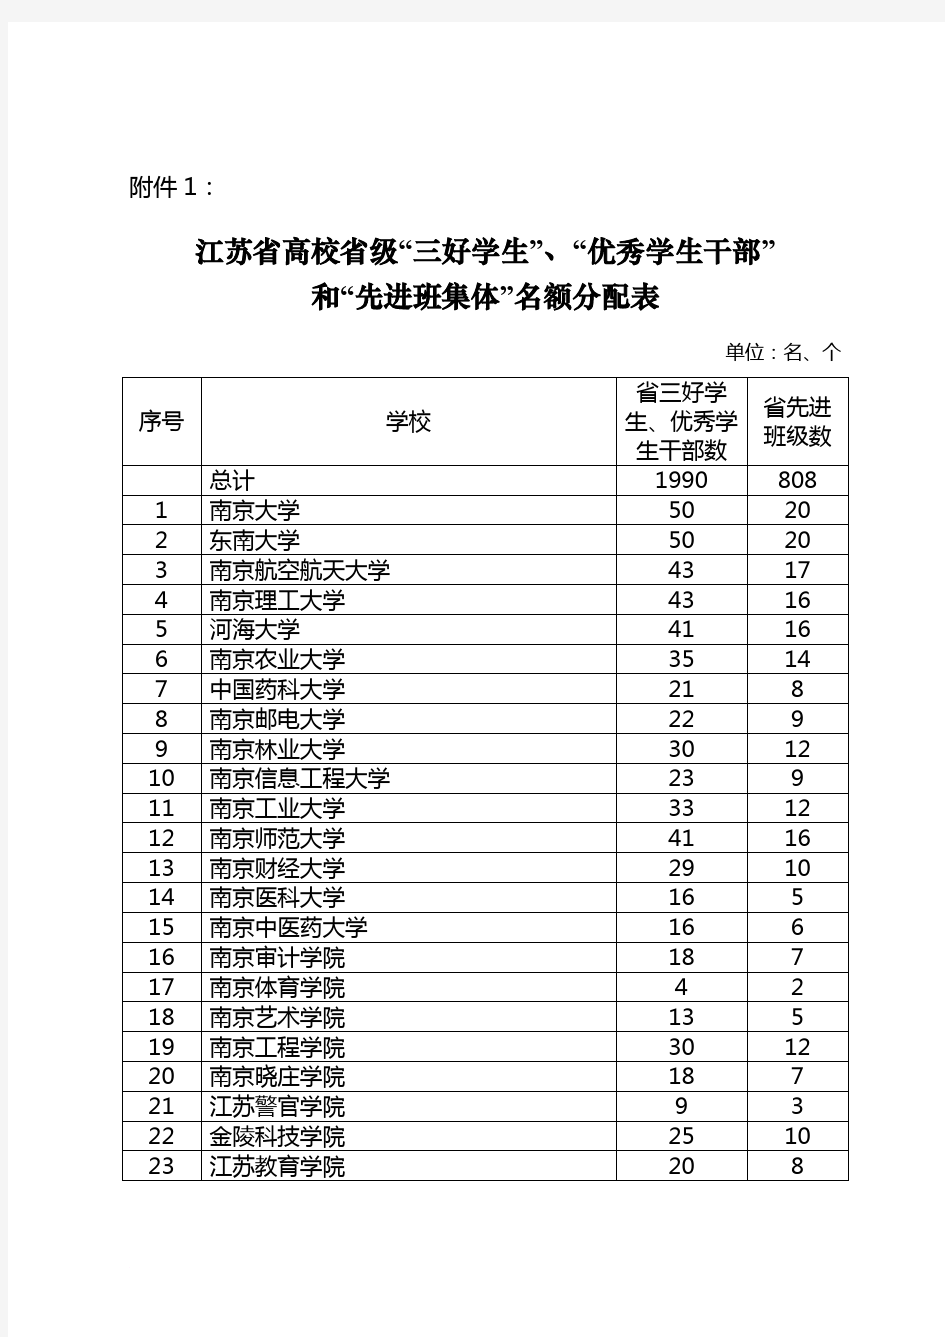 江苏省高校省级“三好学生”、“优秀学生干部”和“先进班集体”名额分配表